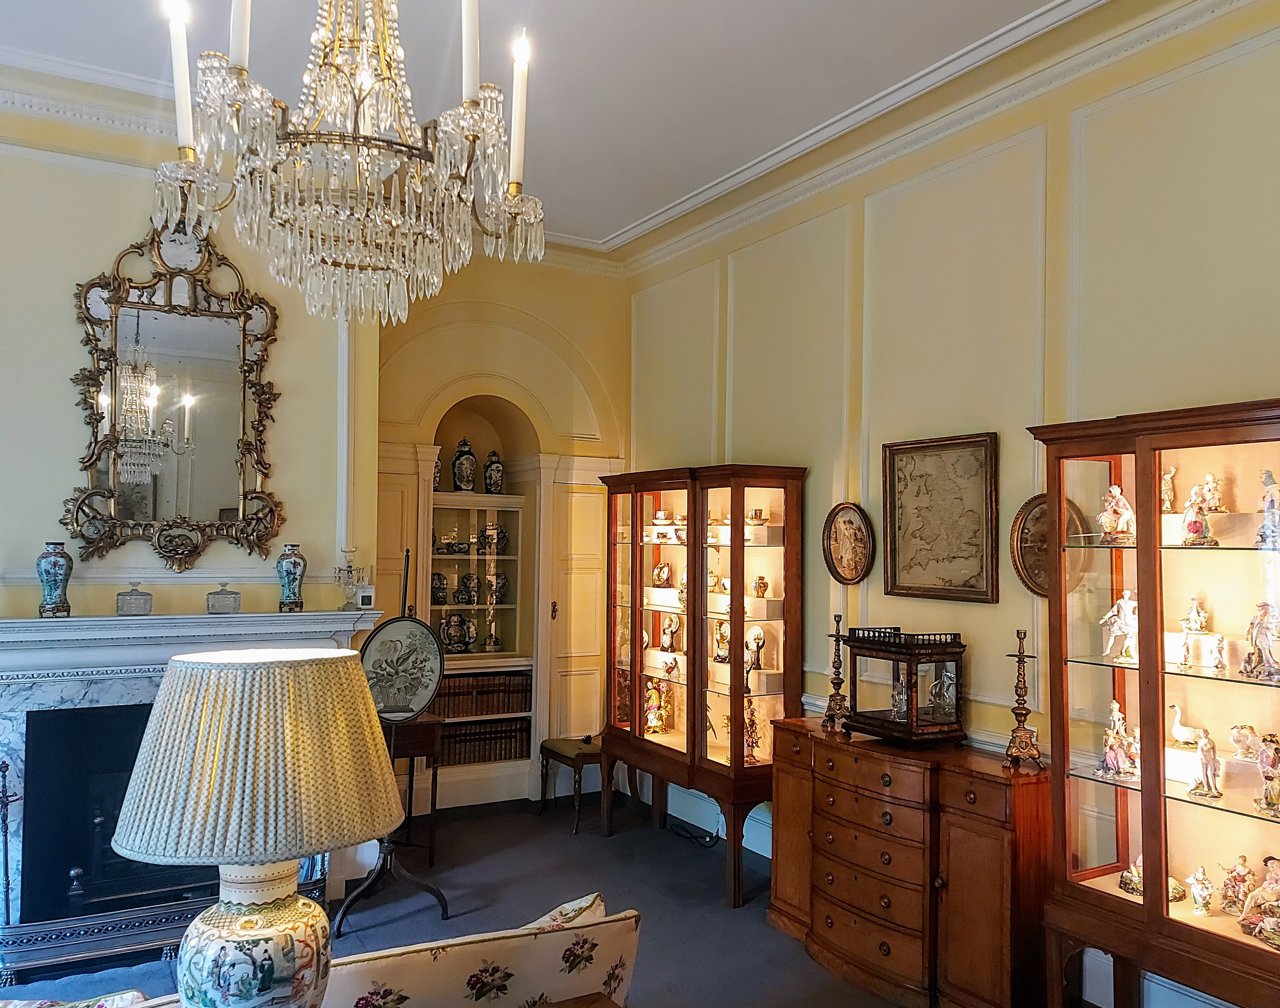 En lo que en su día fue una zona de estar de la casa, se expone una colección de porcelana y diferentes muebles de estilo georgiano.